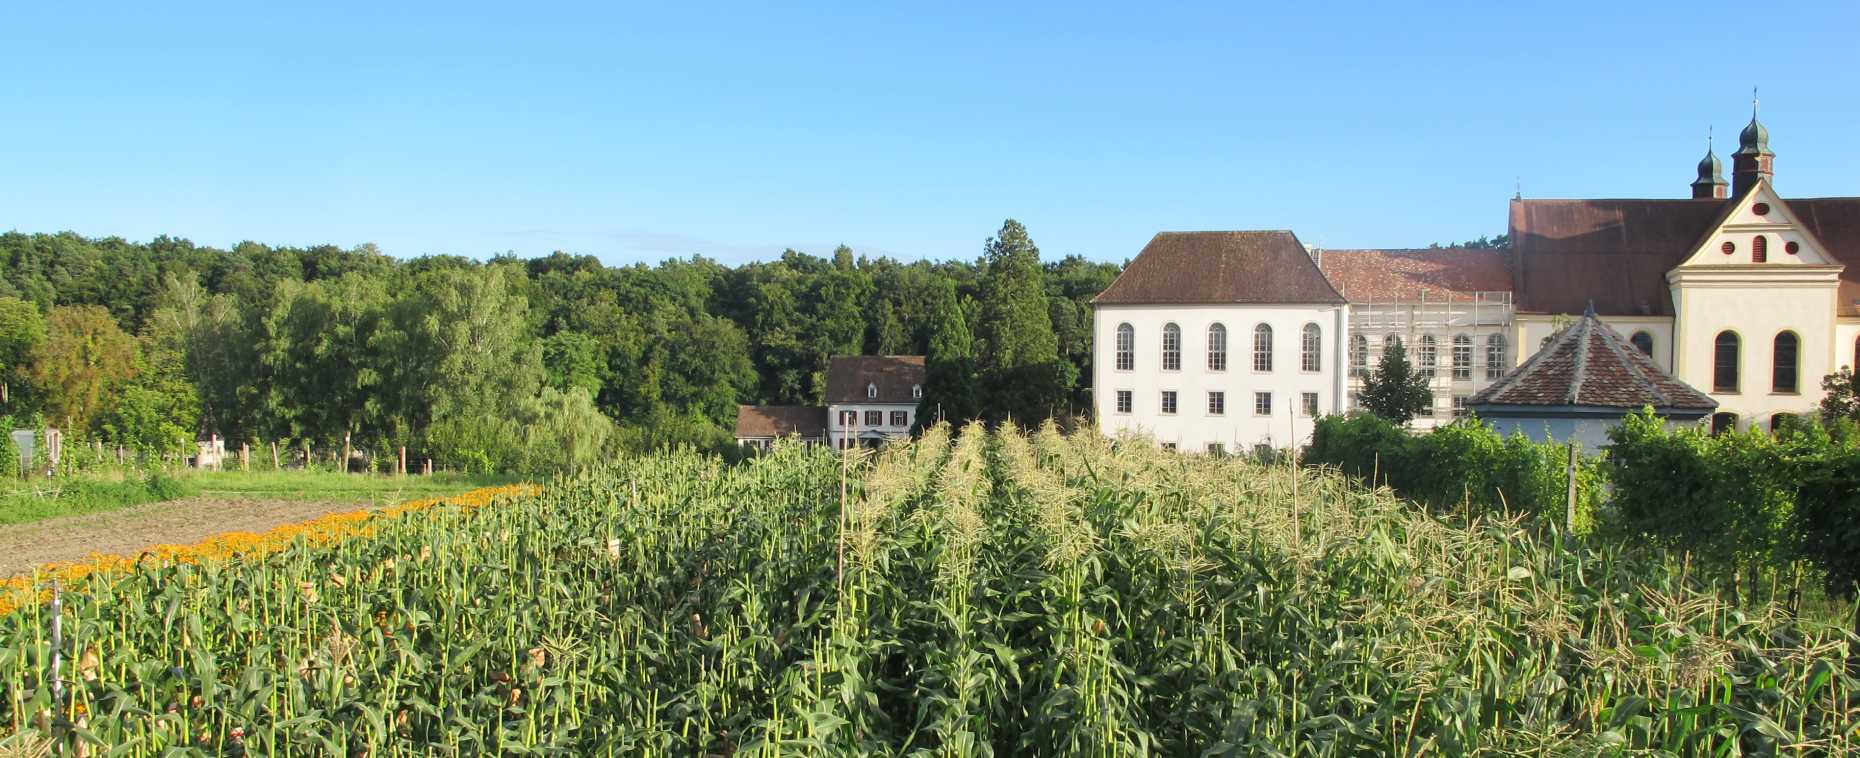 Enlarged view: Gut Rheinau farm